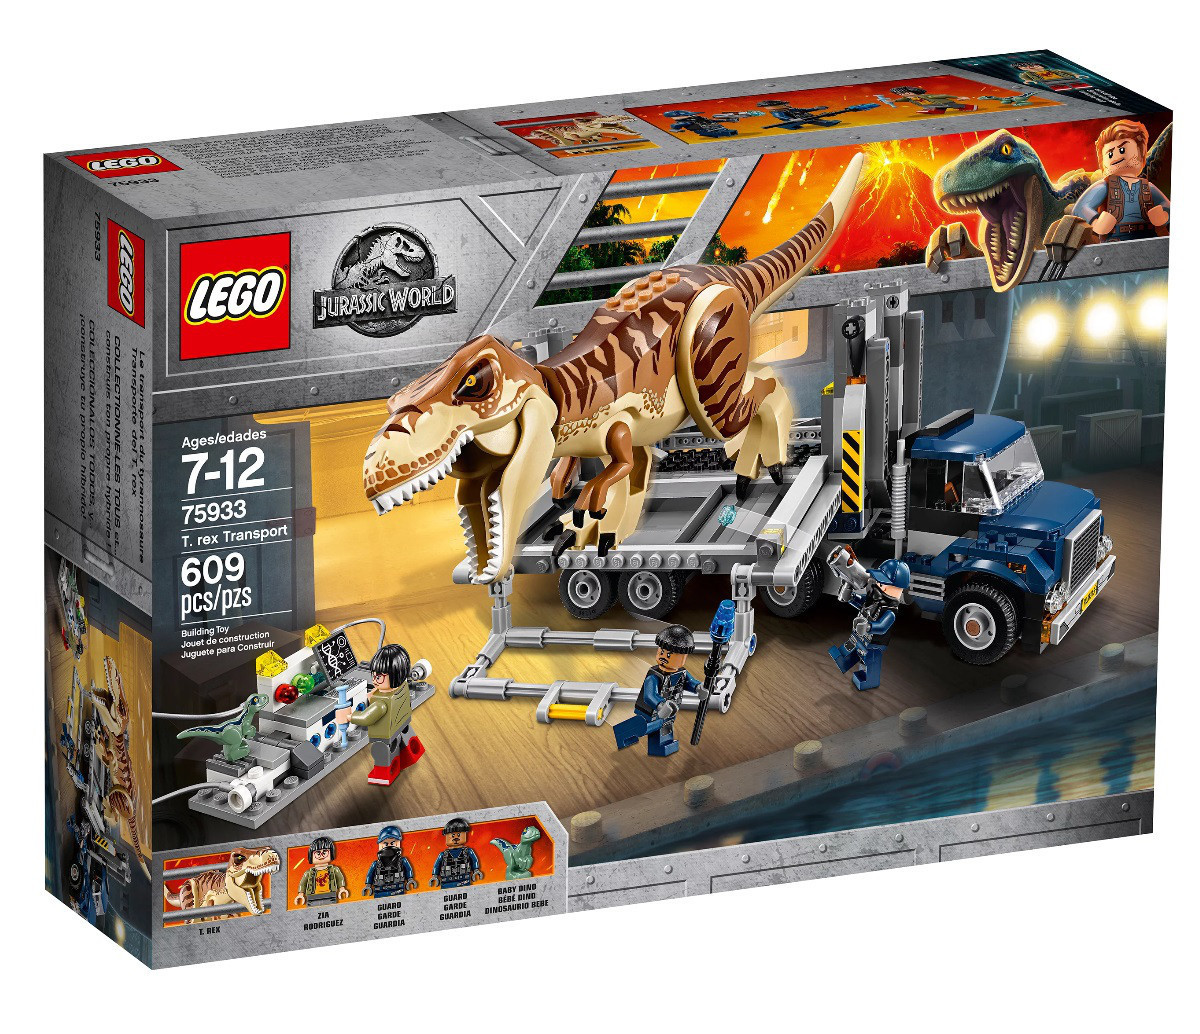 75933 Lego Jurassic World Транспорт для перевозки Ти-Рекса, Лего Мир Юрского периода